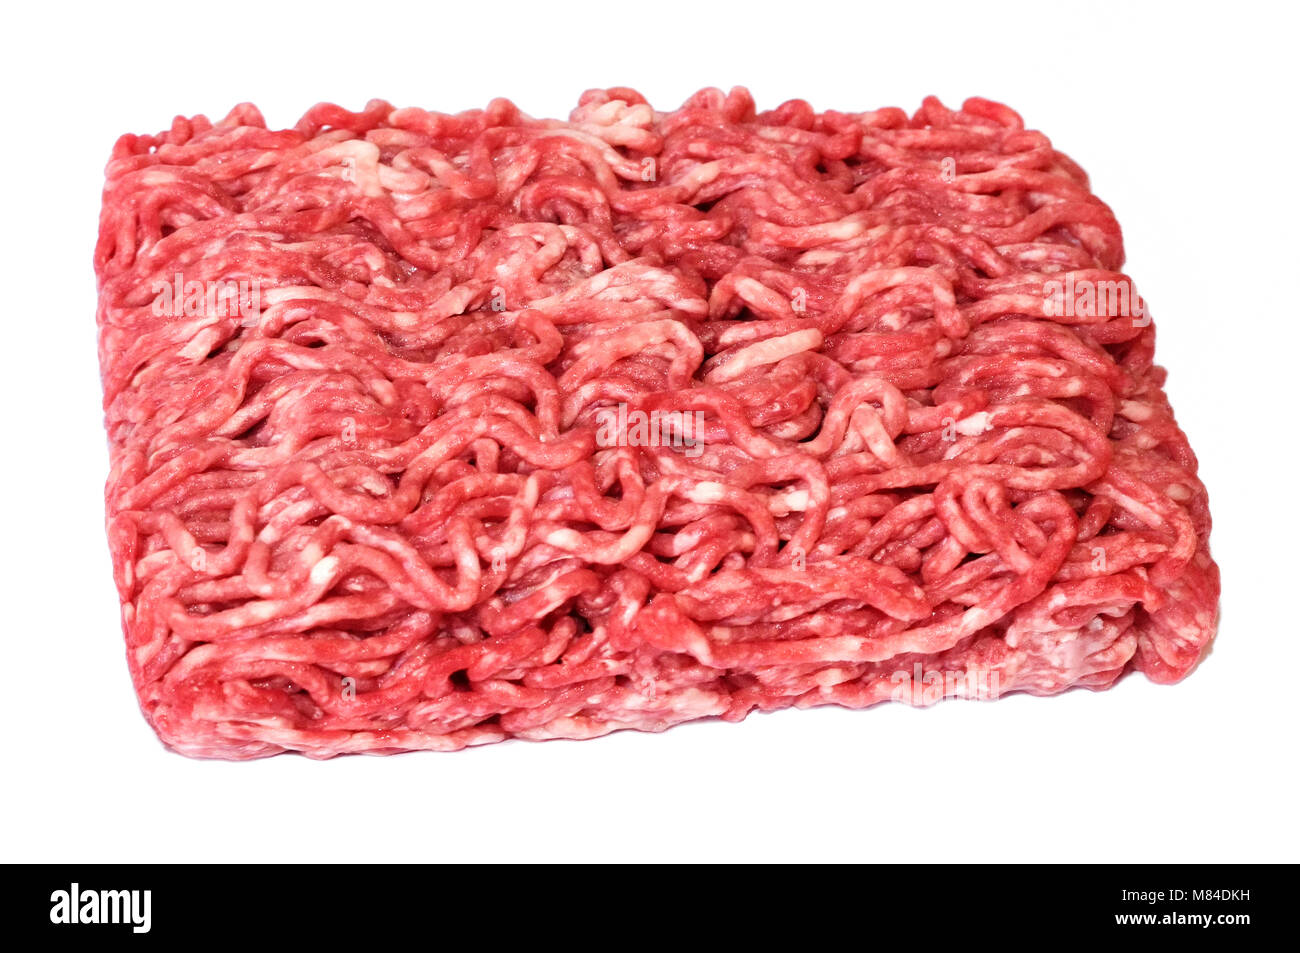 Materie le carni macinate o le carni bovine, isolato su sfondo bianco. Carni fresche, ingrediente di cottura. ad alto angolo di visione. Foto Stock